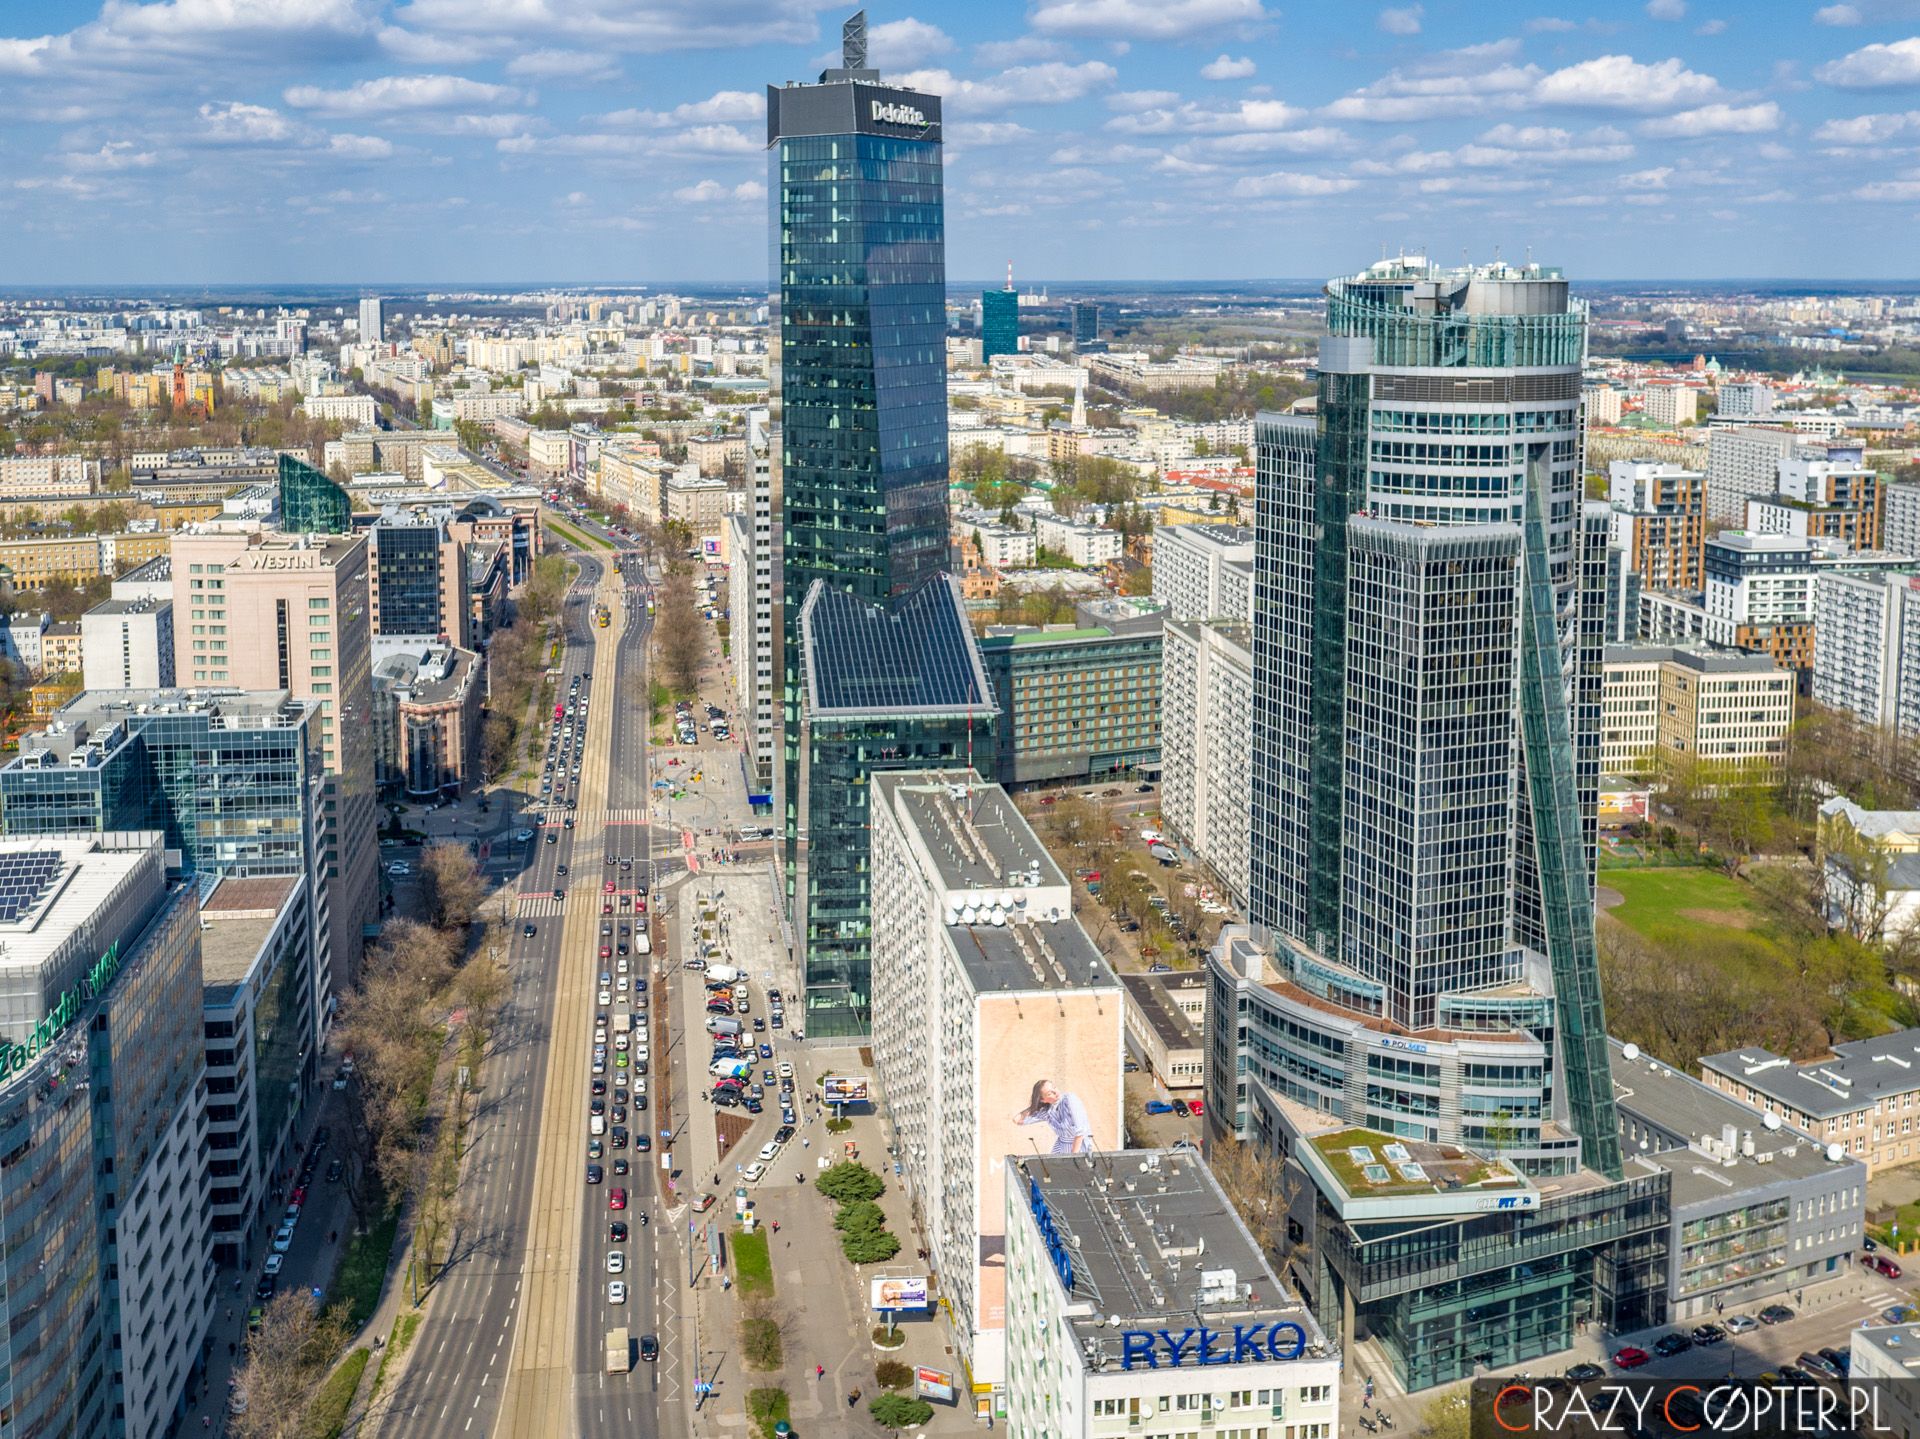 Zdjęcie z lotu ptaka przedstawiające wieżowce w Centrum Warszawy.